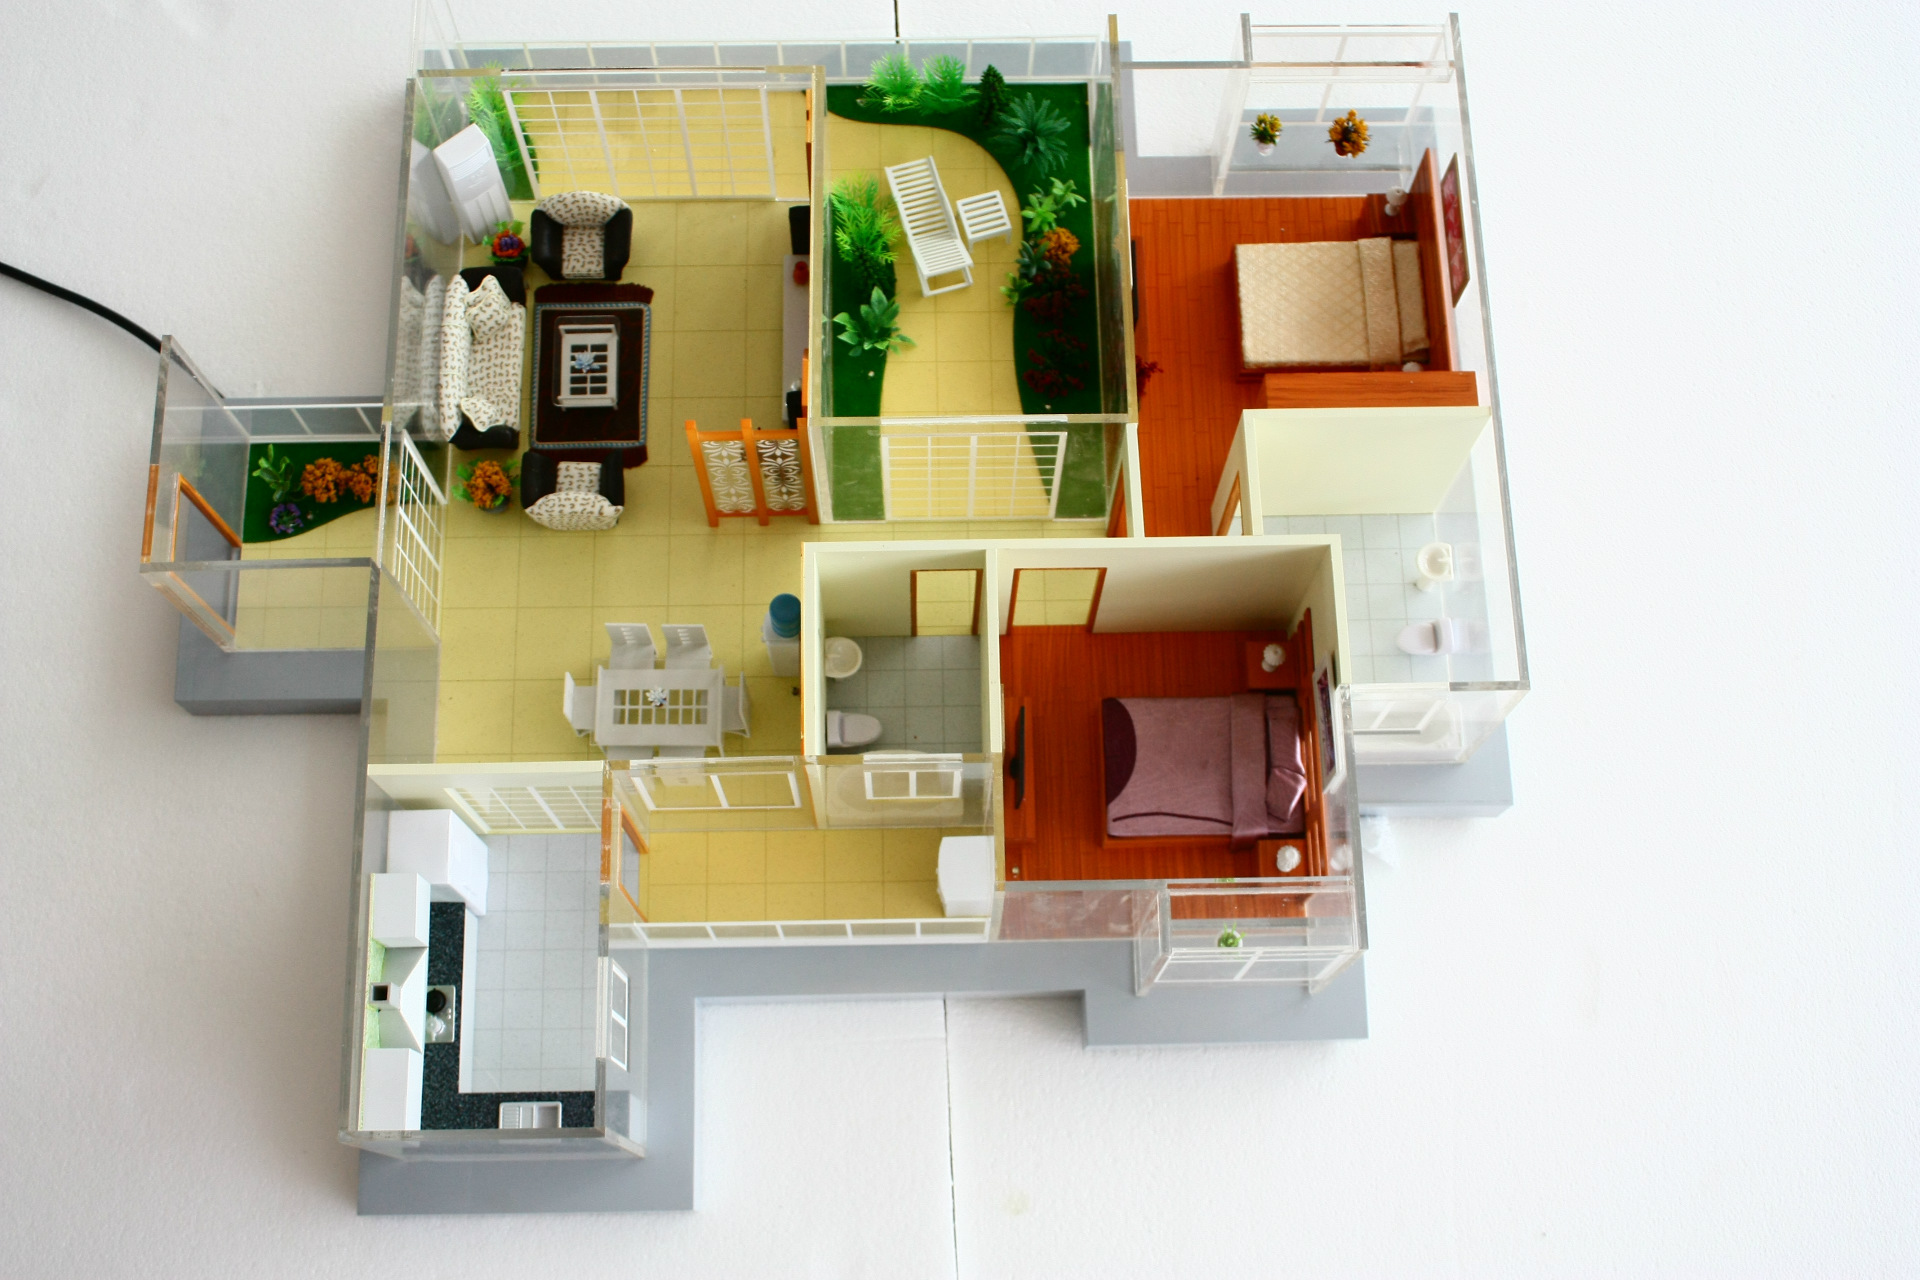 简单房子模型 平面图片